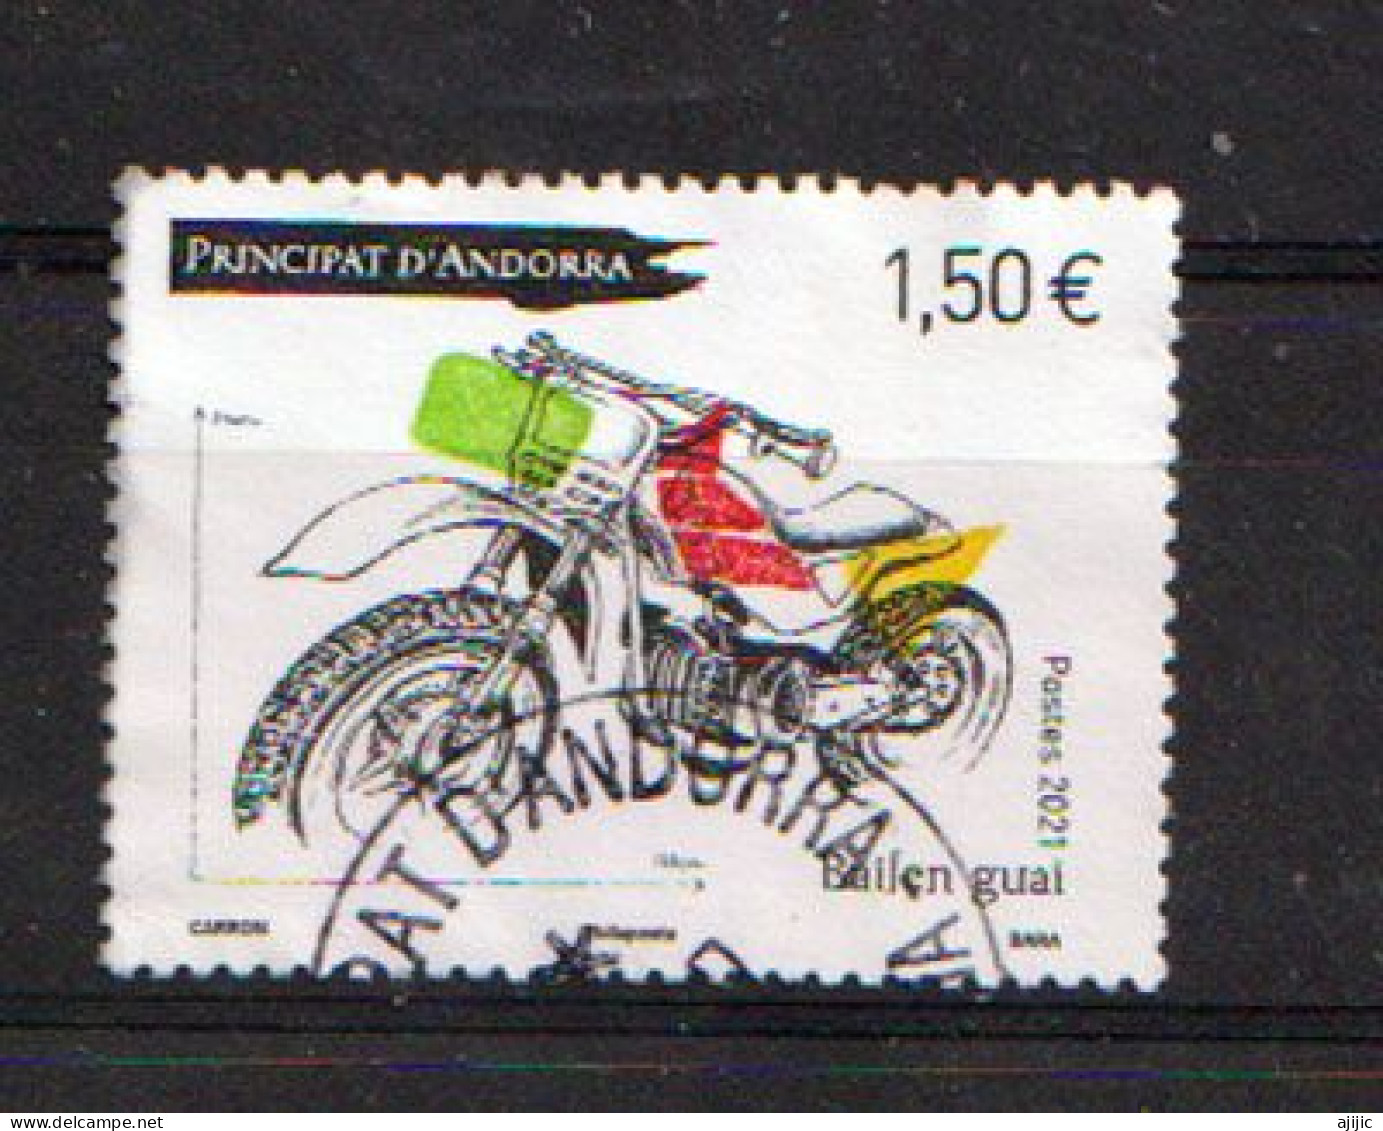 2021 (Moto Bailen Guai,fabriqué En Andorre) Timbre Oblitéré, 1 ère Qualité - Used Stamps